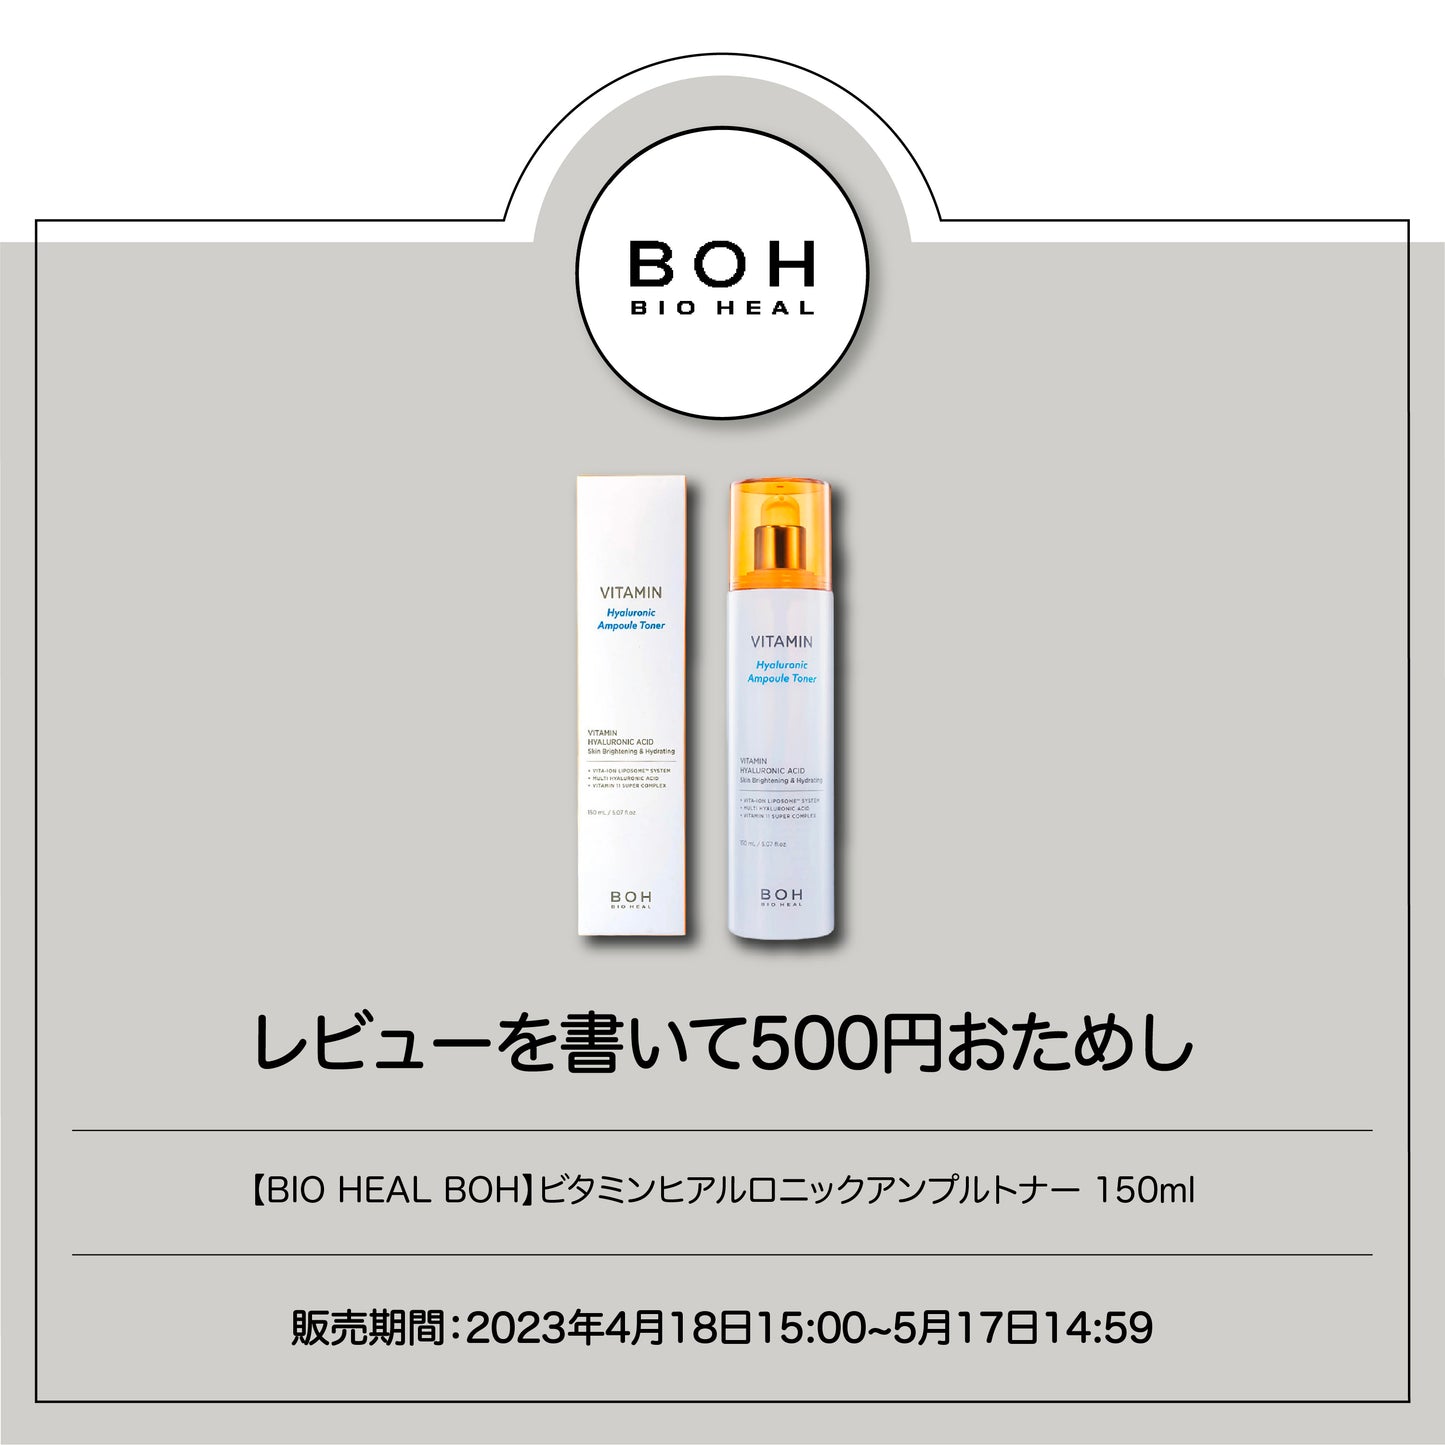 【BIOHEAL BOH】ビタミンヒアルロニックアンプルトナー 150ml